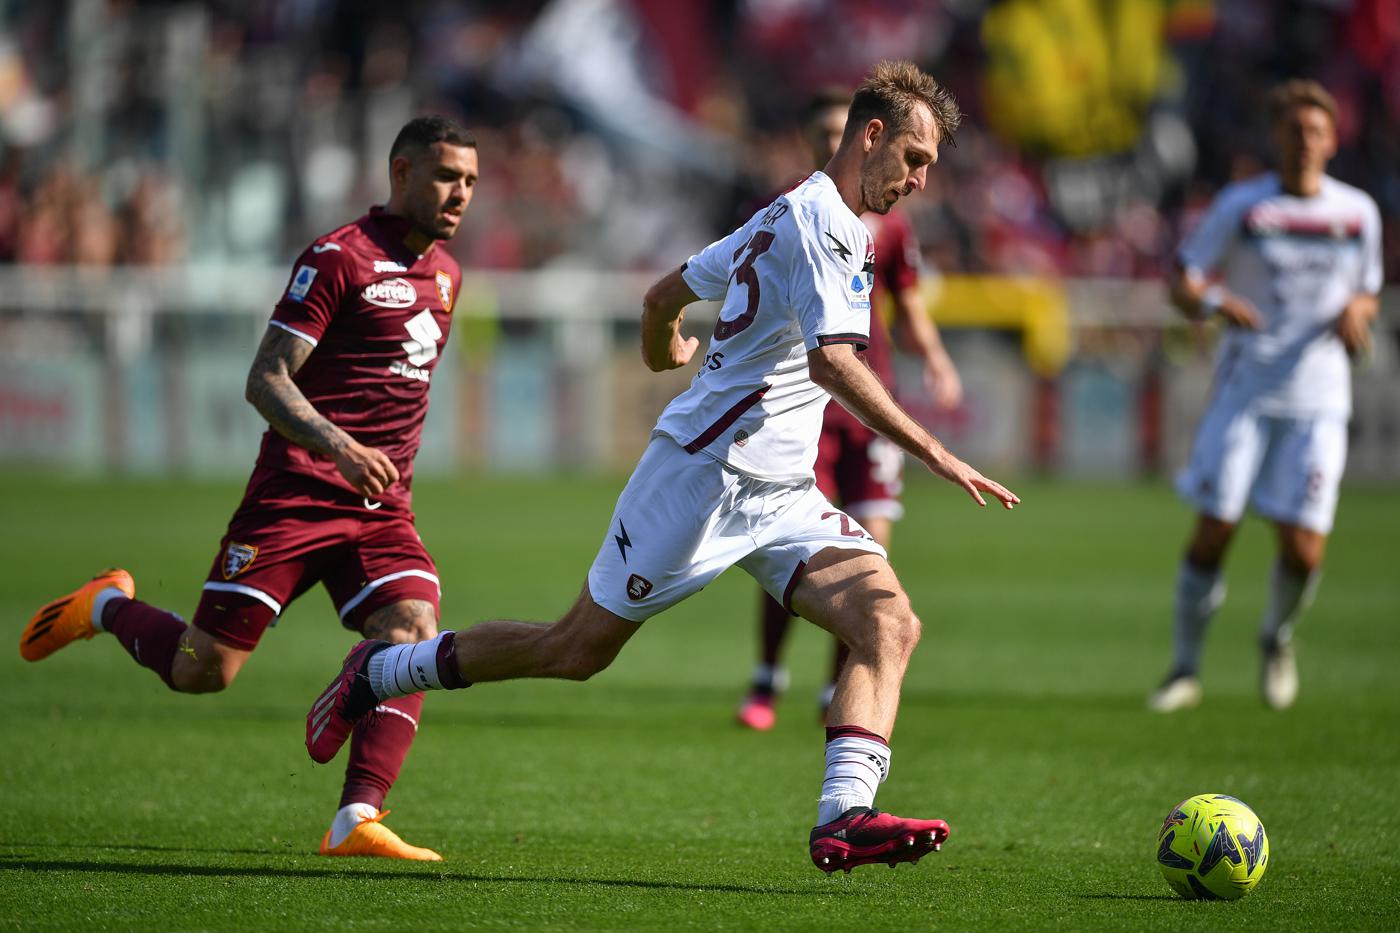 Torino v Salernitana - 1-1. Mistrzostwo Włoch, runda 30. Przegląd meczu, statystyki